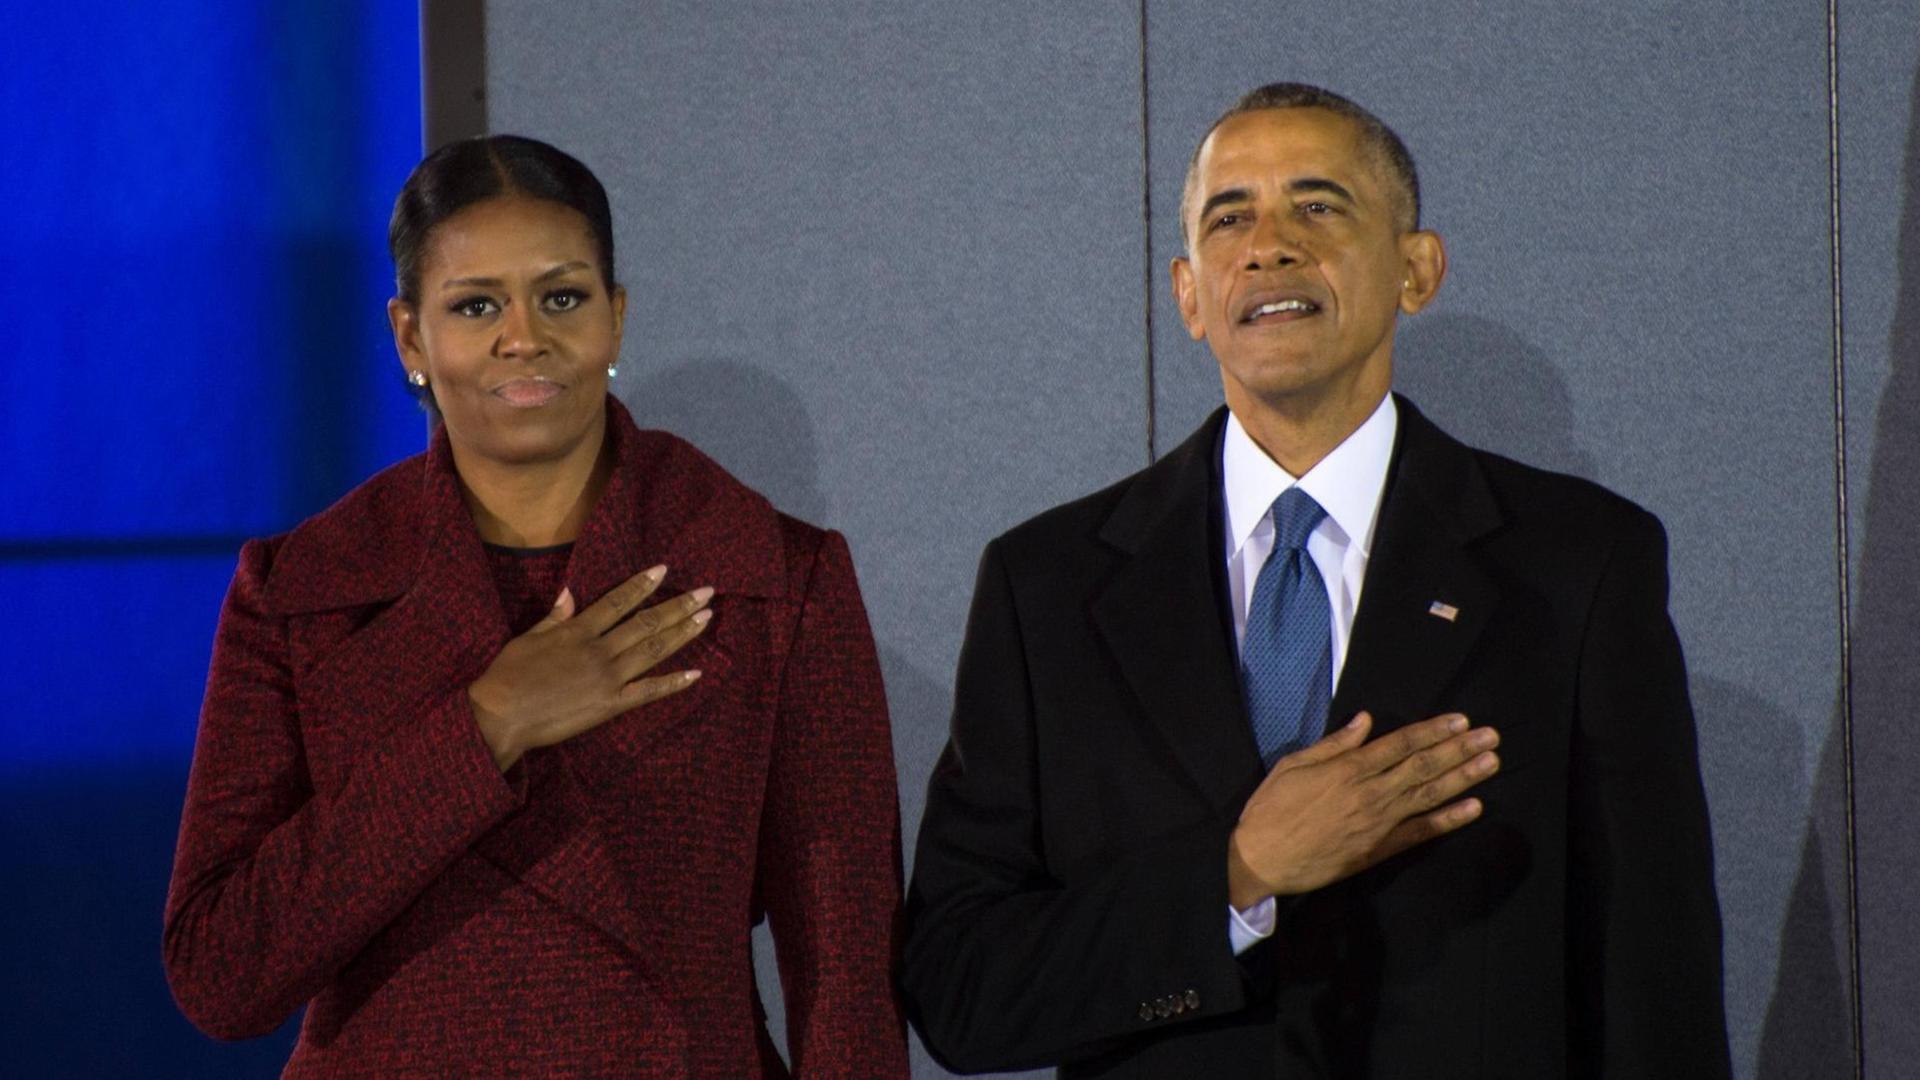 Der frührere U.S. Präsident Barack Obama und First Lady Michelle Obama stehen am 20. Januar 2017 während der Nationalhymne vor der Militärbasis Joint Base Andrews in Maryland